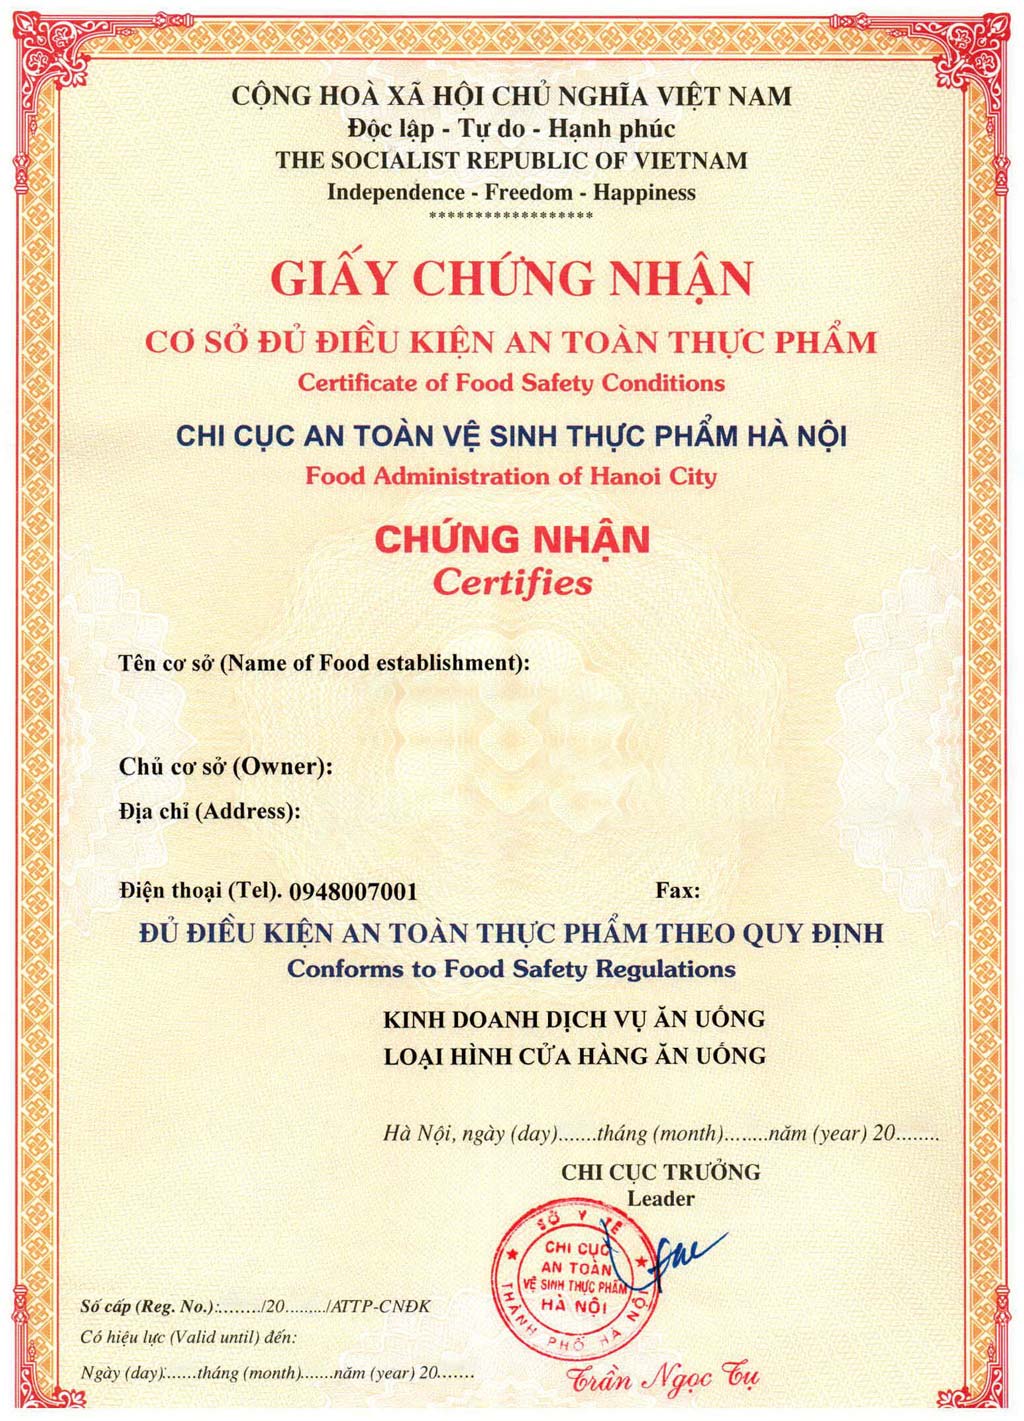 Giấy chứng nhận vệ sinh an toàn thực phẩm Việt Nam là chứng chỉ chứng nhận cơ sở chế biến thực phẩm đạt đủ tiêu chuẩn với sự kiểm duyệt của các cơ quan chức năng ở Việt Nam.